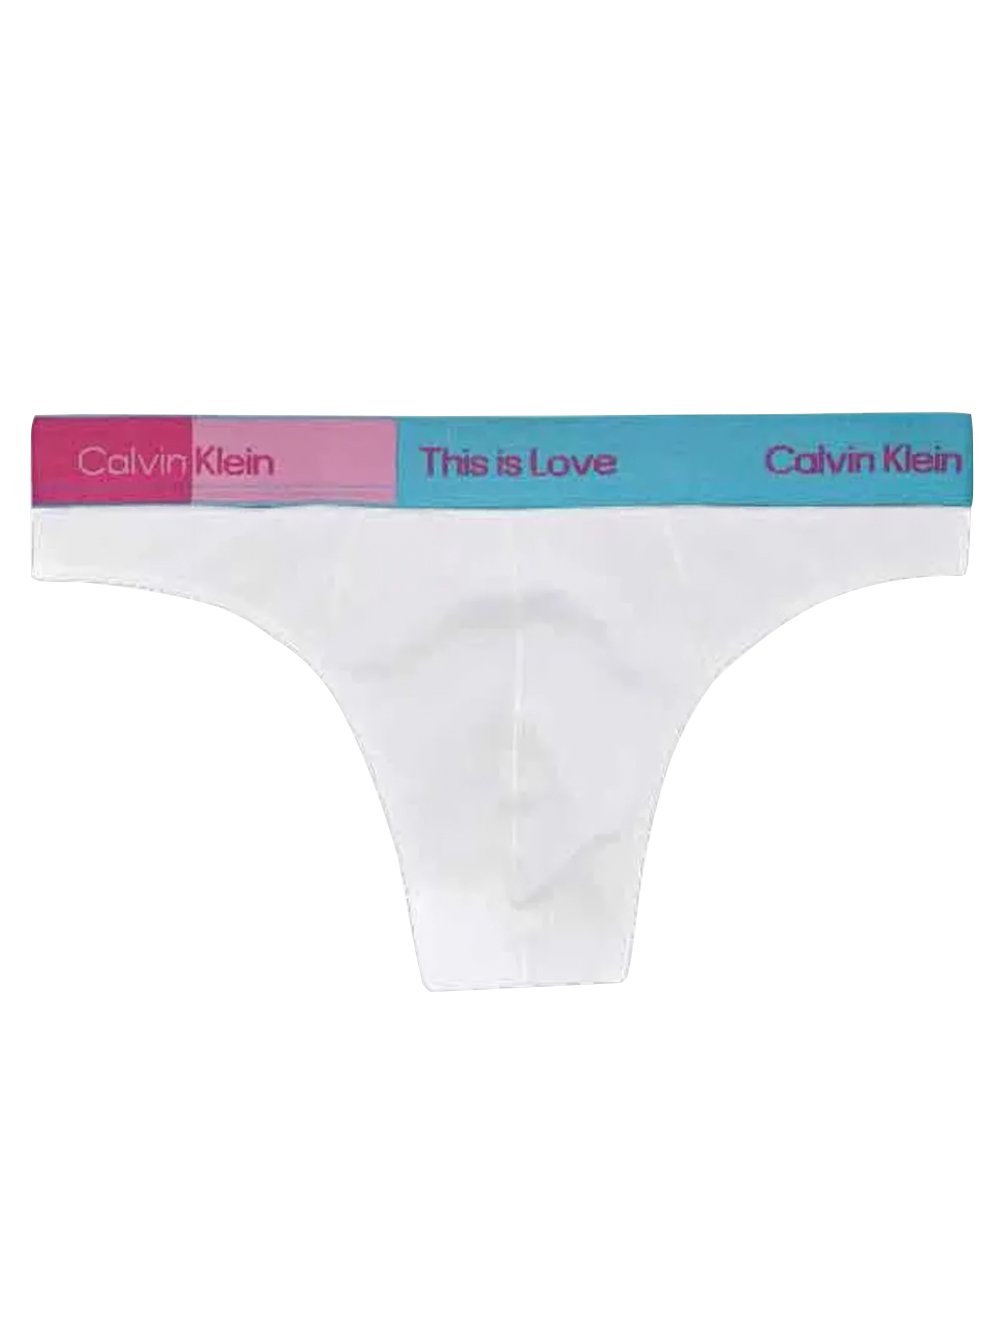 Calvin Klein Love G-Strings & Thongs for Women